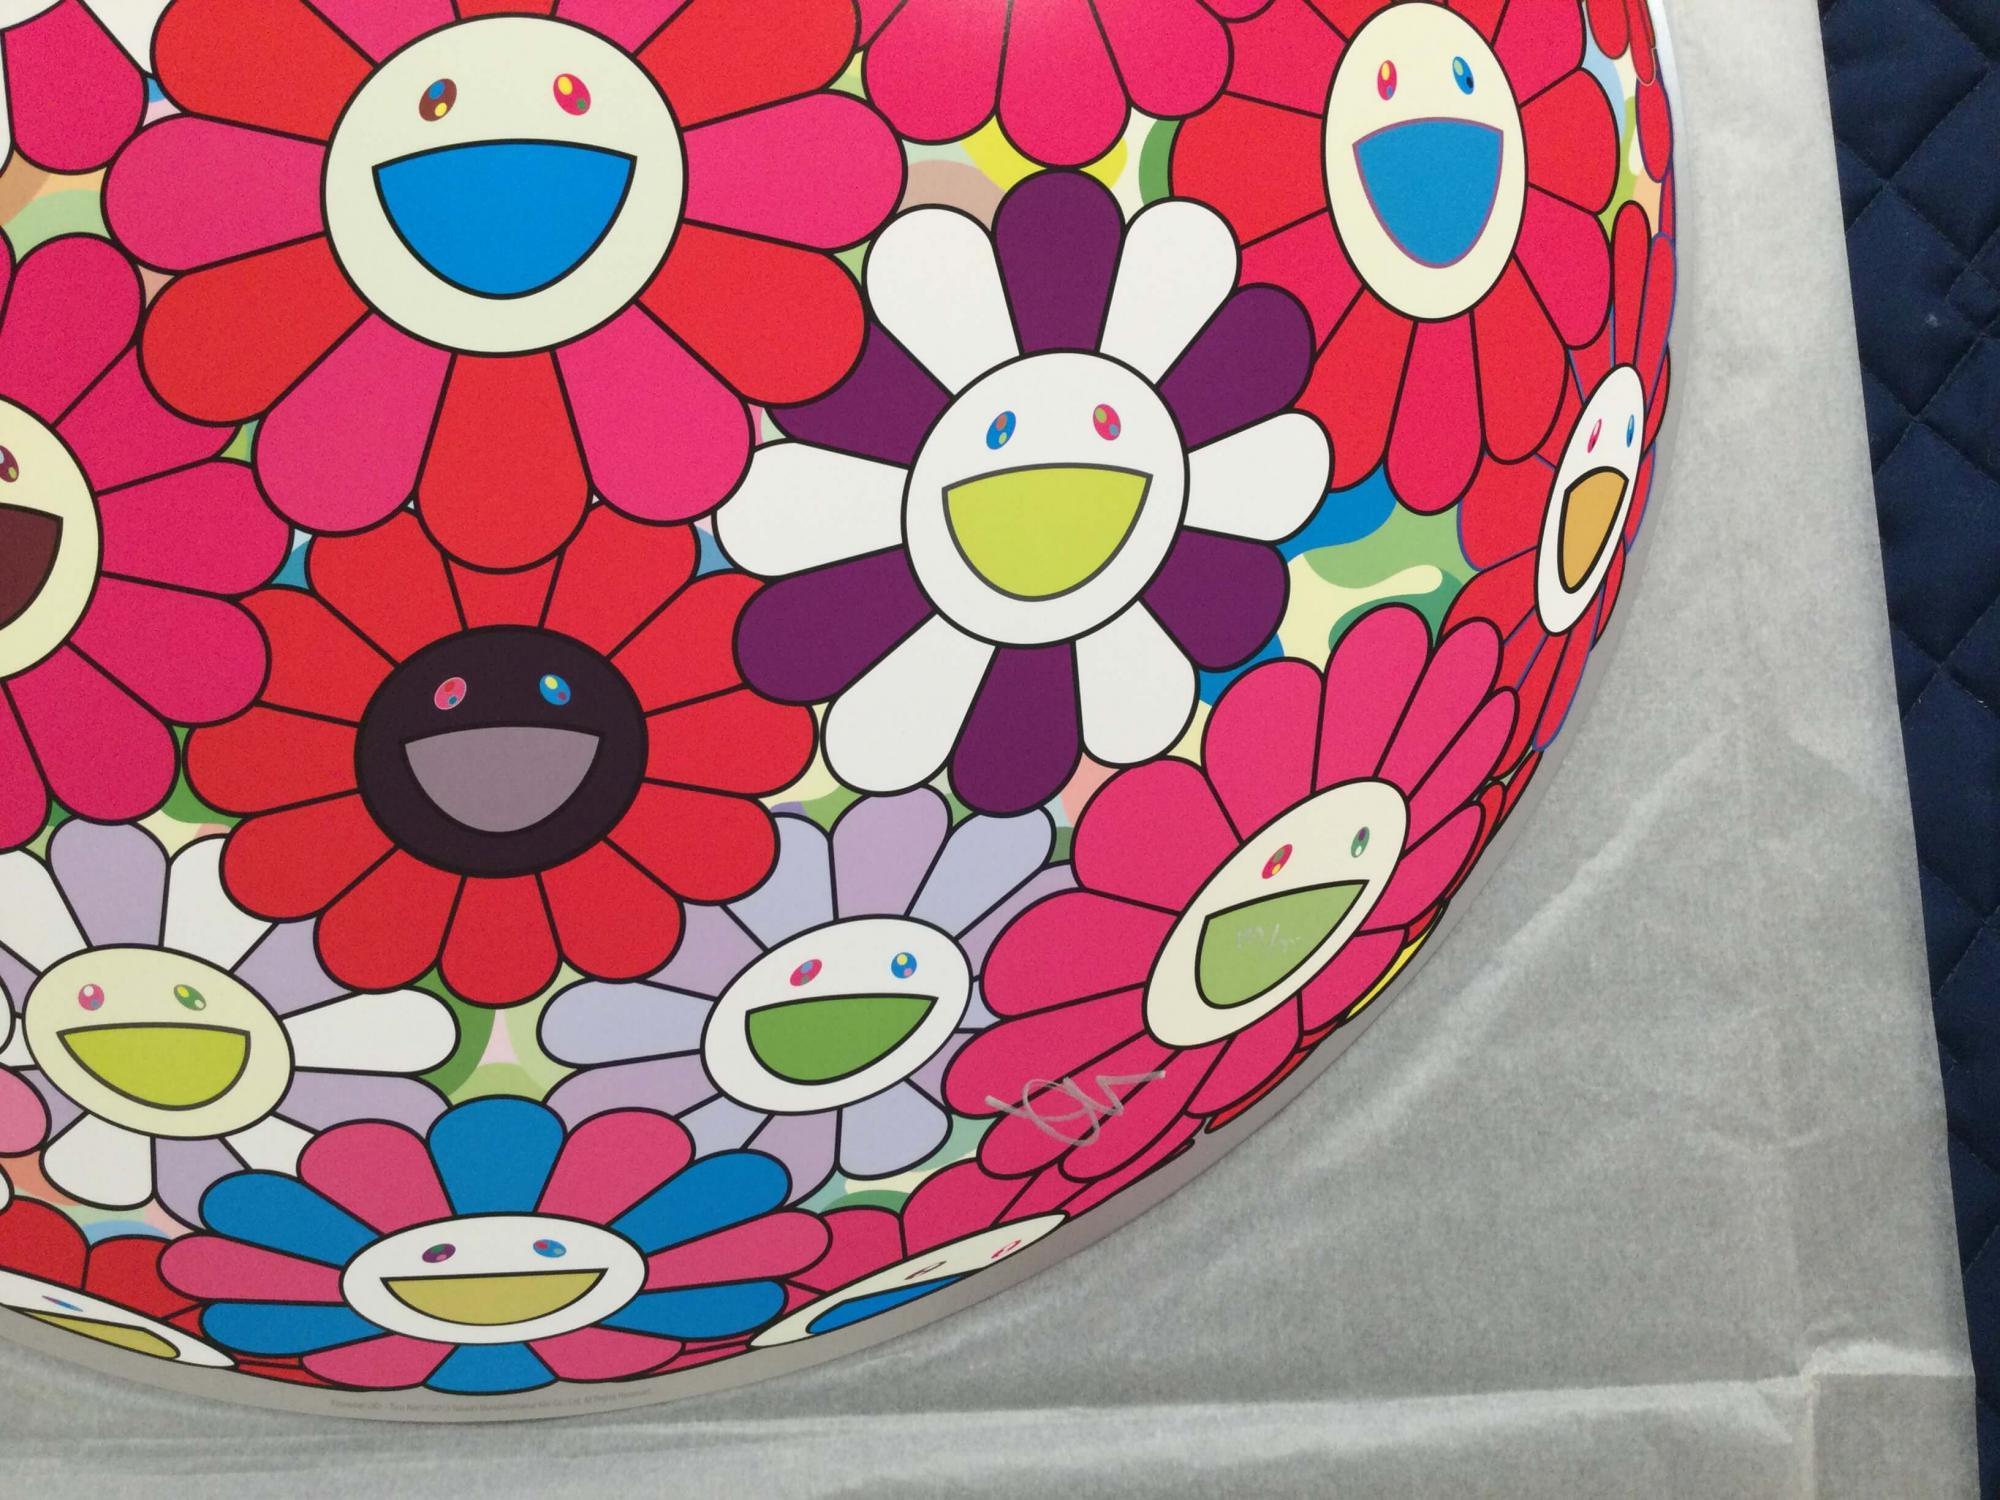 Flowerball (3D) - Turn Red!, 2013 von Takashi Murakami
Gewebtes Papier, vierfarbiger Offsetdruck, Kaltfolienprägung, Glanzlack
Herausgegeben von Kaikai Kiki Co, Ltd. in Tokio
28 im Durchmesser
71 cm Durchmesser
Ausgabe 67/300

Takashi Murakami ist